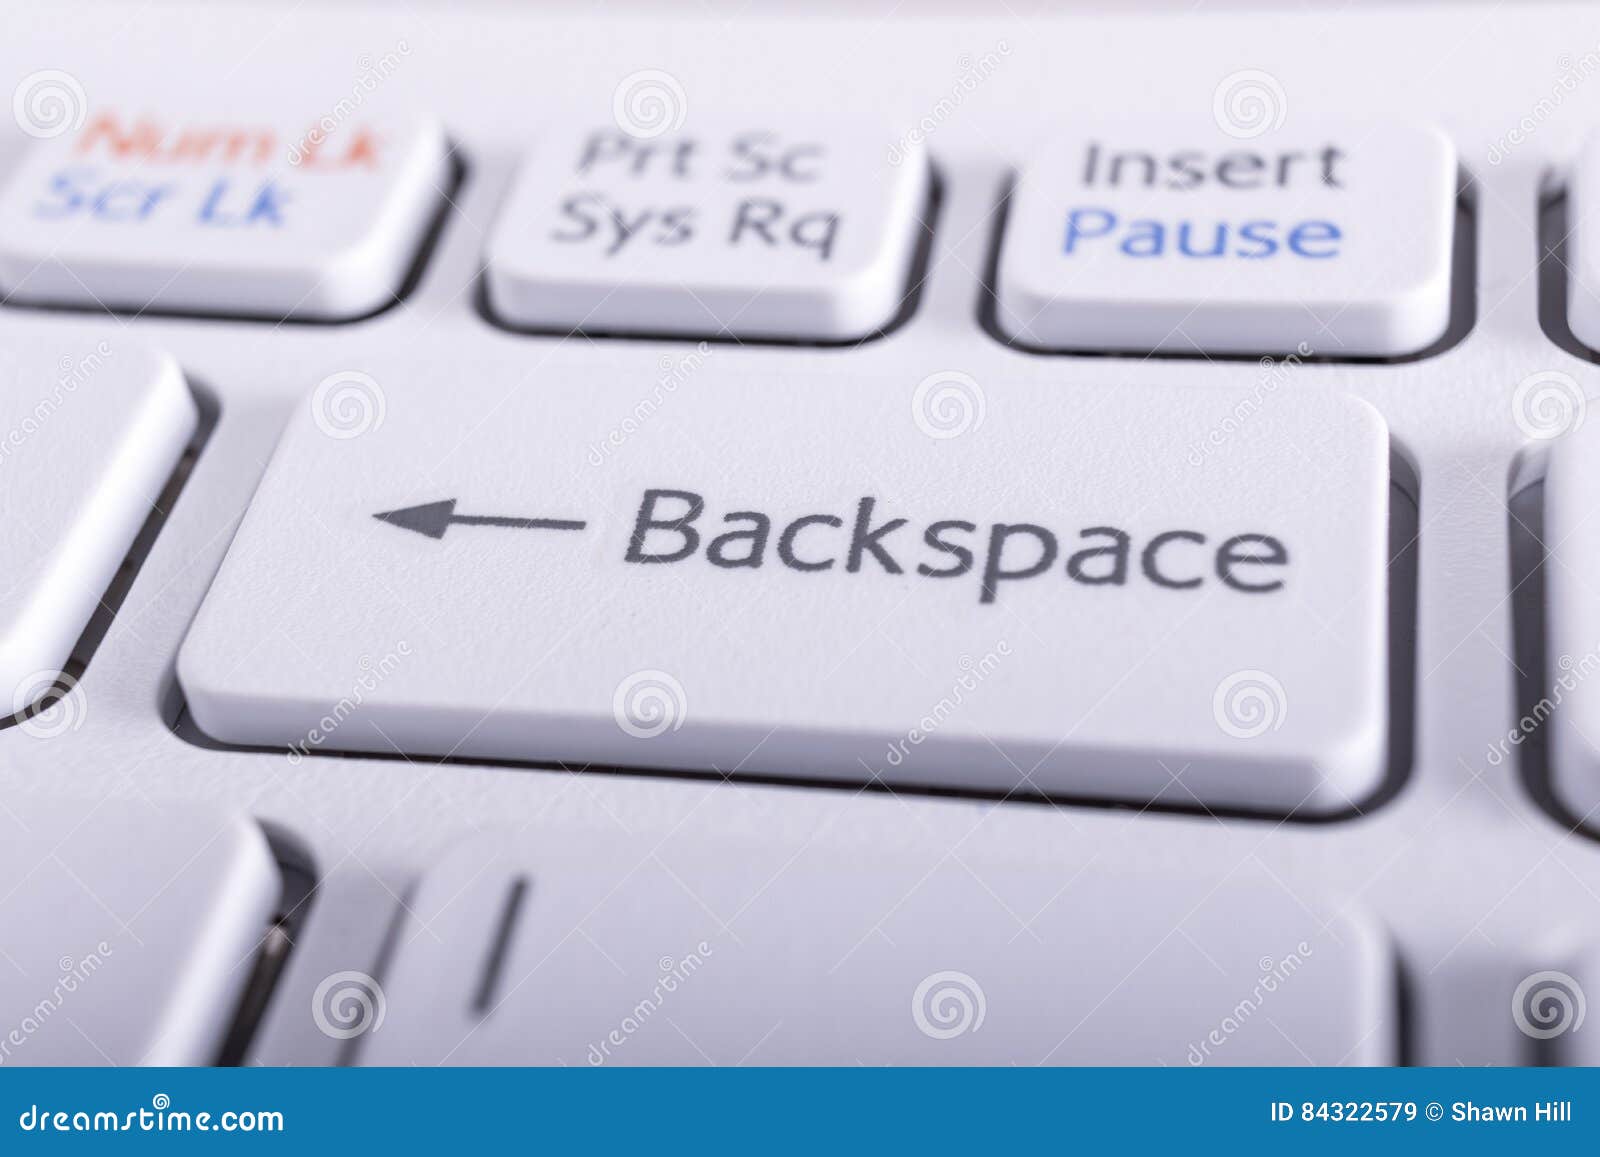 Backspace что делает. Клавиши бэкспейс на клавиатуре. Кнопка Backspace. Клавиша Backspace на клавиатуре. Кнопка бекспейс на клавиатуре.